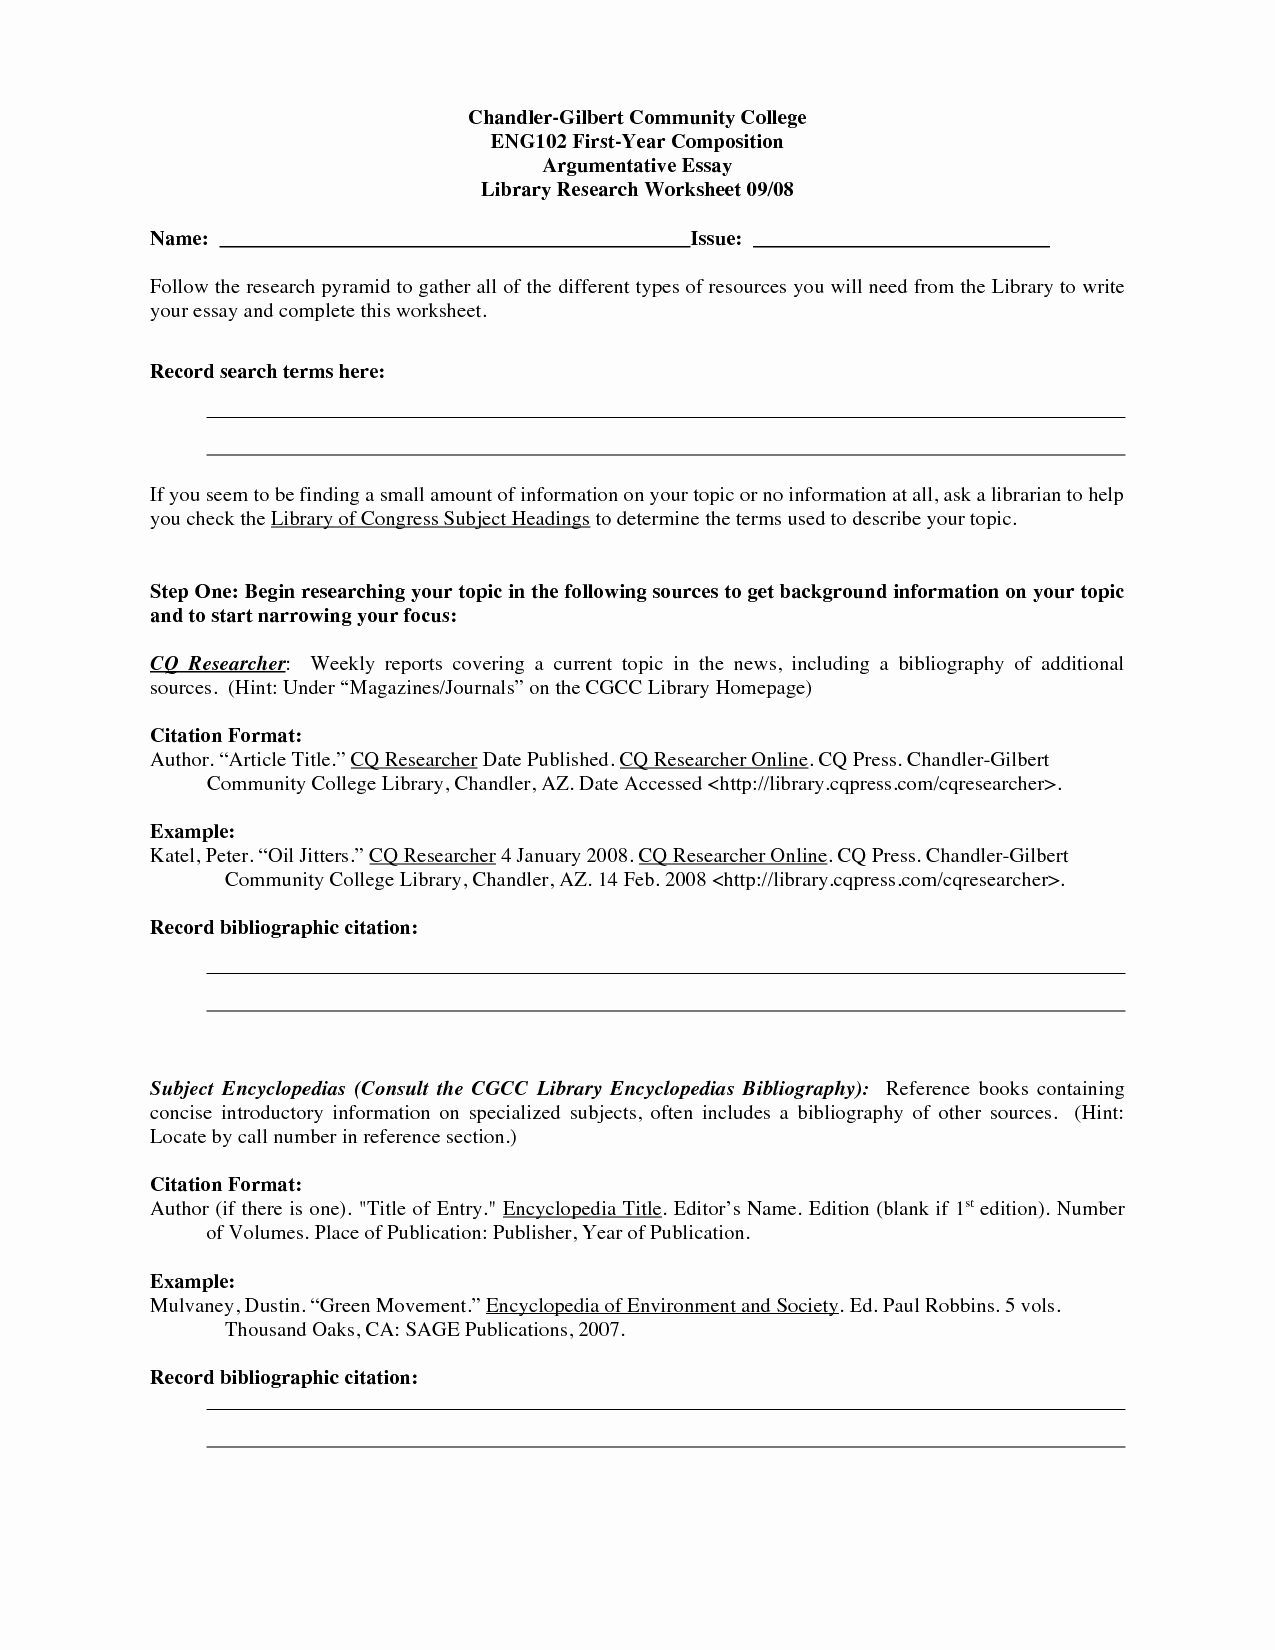 Argumentative Essay Outline Worksheet Best Of Essays Proofreading Worksheet